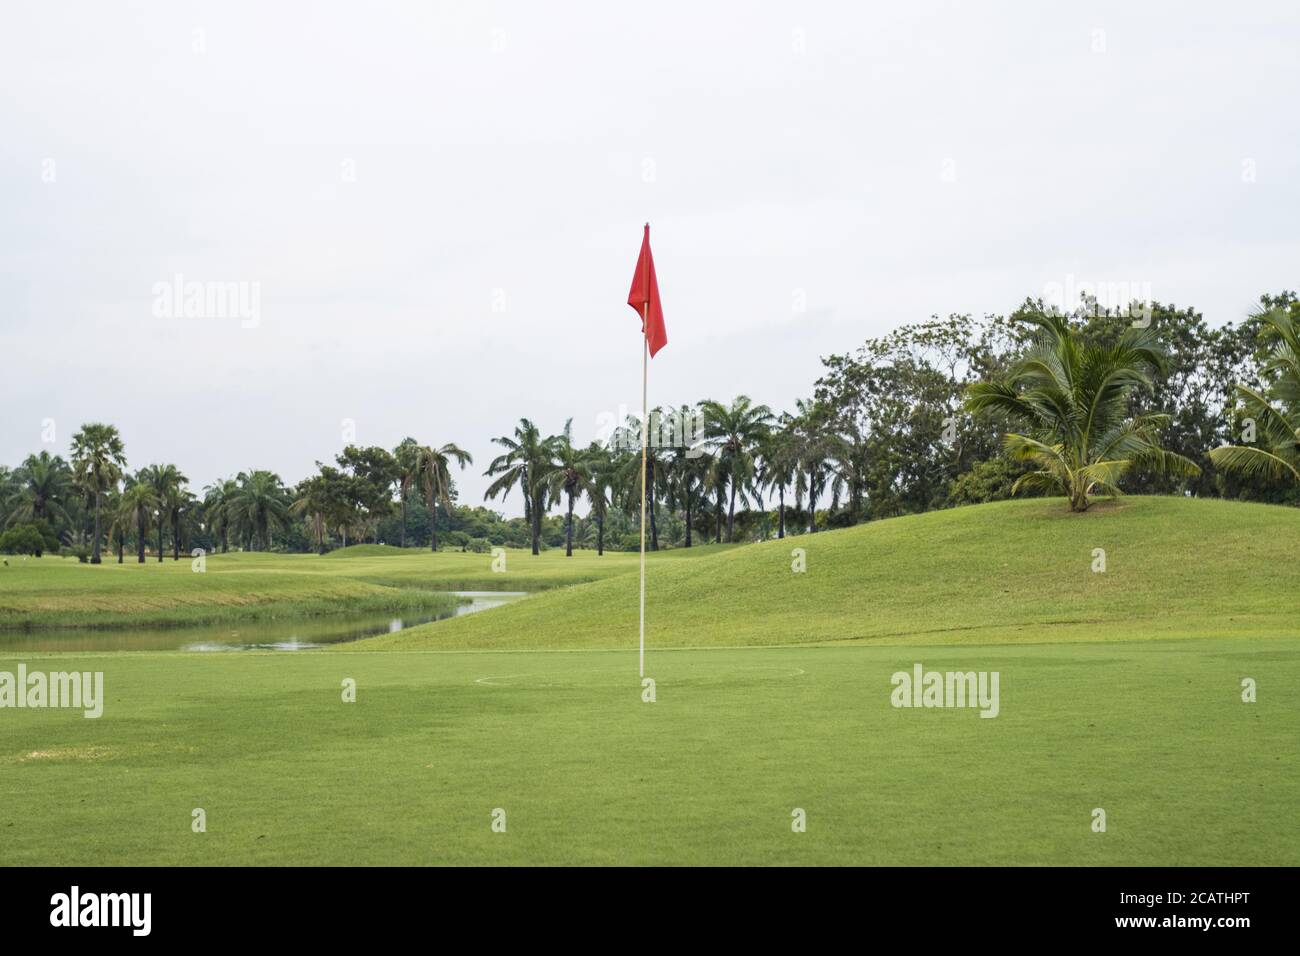 Bandiera rossa sull'erba nel campo da golf del verde Foto Stock